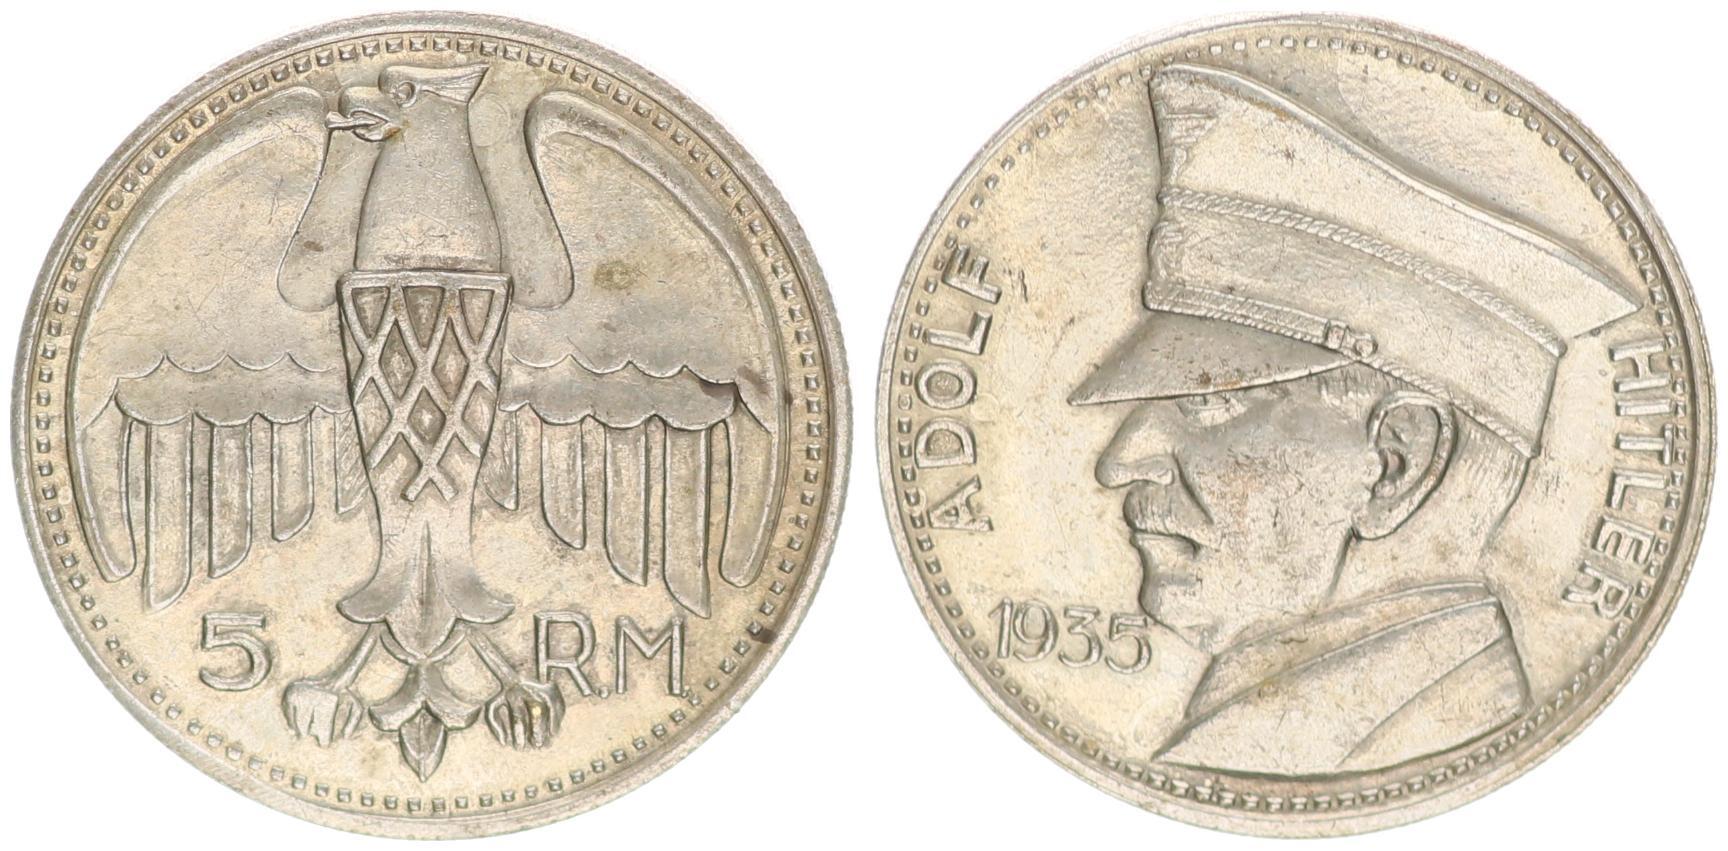 5 Reichsmark 1935 German Coin Third Reich WW2 Adolf Hitler Exonumia GVUS 